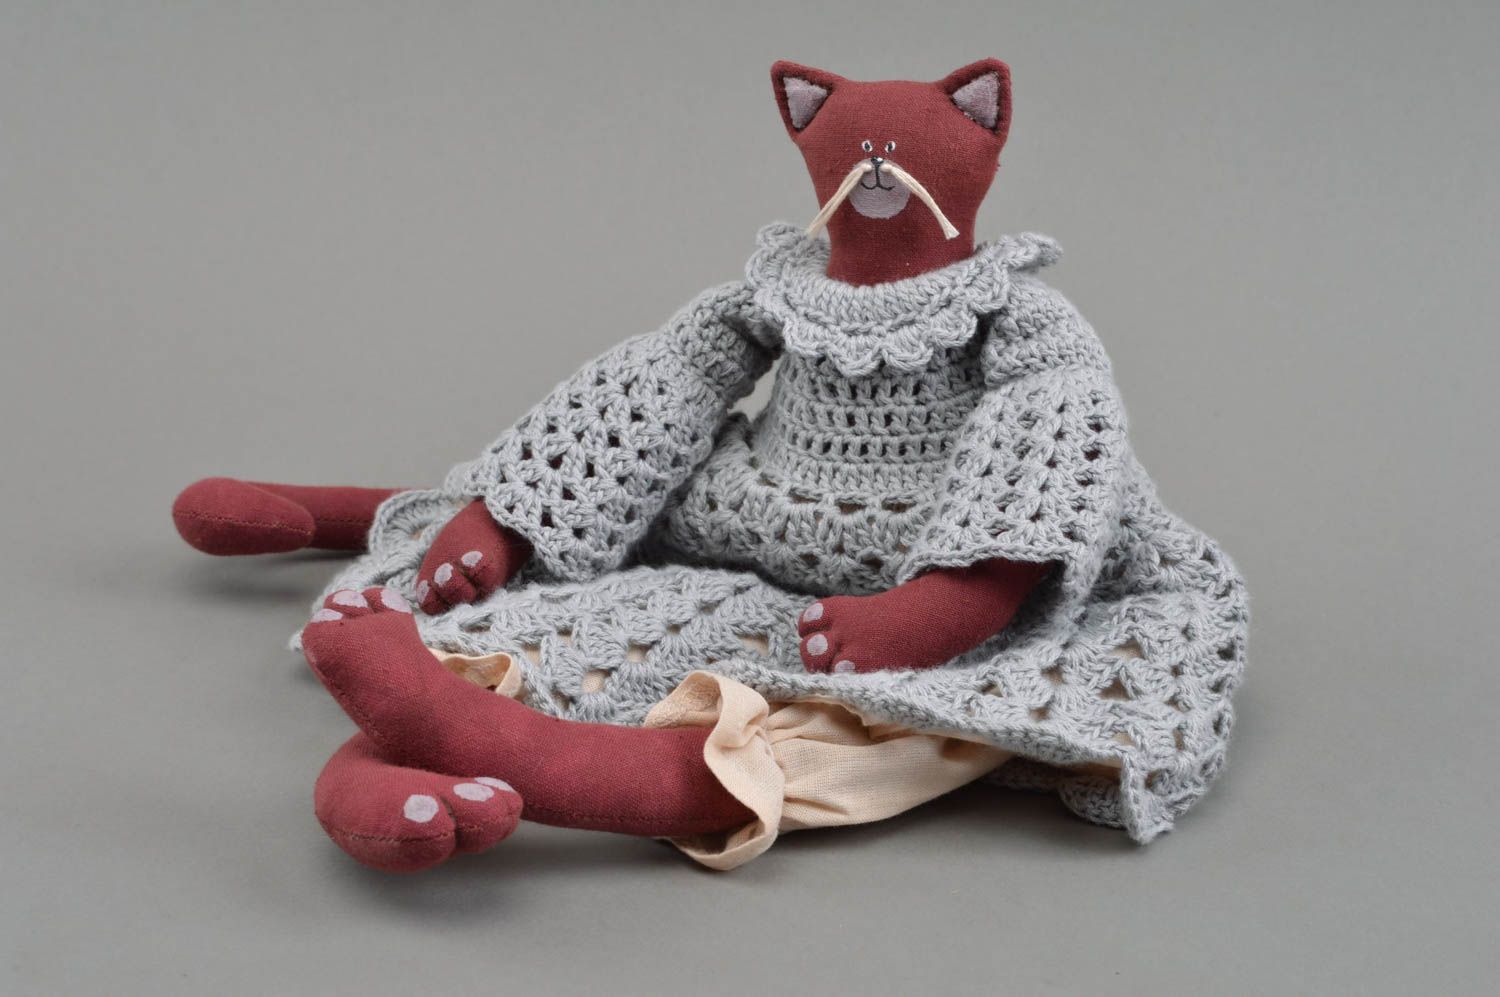 Textil Kuscheltier Katze rot im gehäkelten Kleid handmade schön originell foto 3